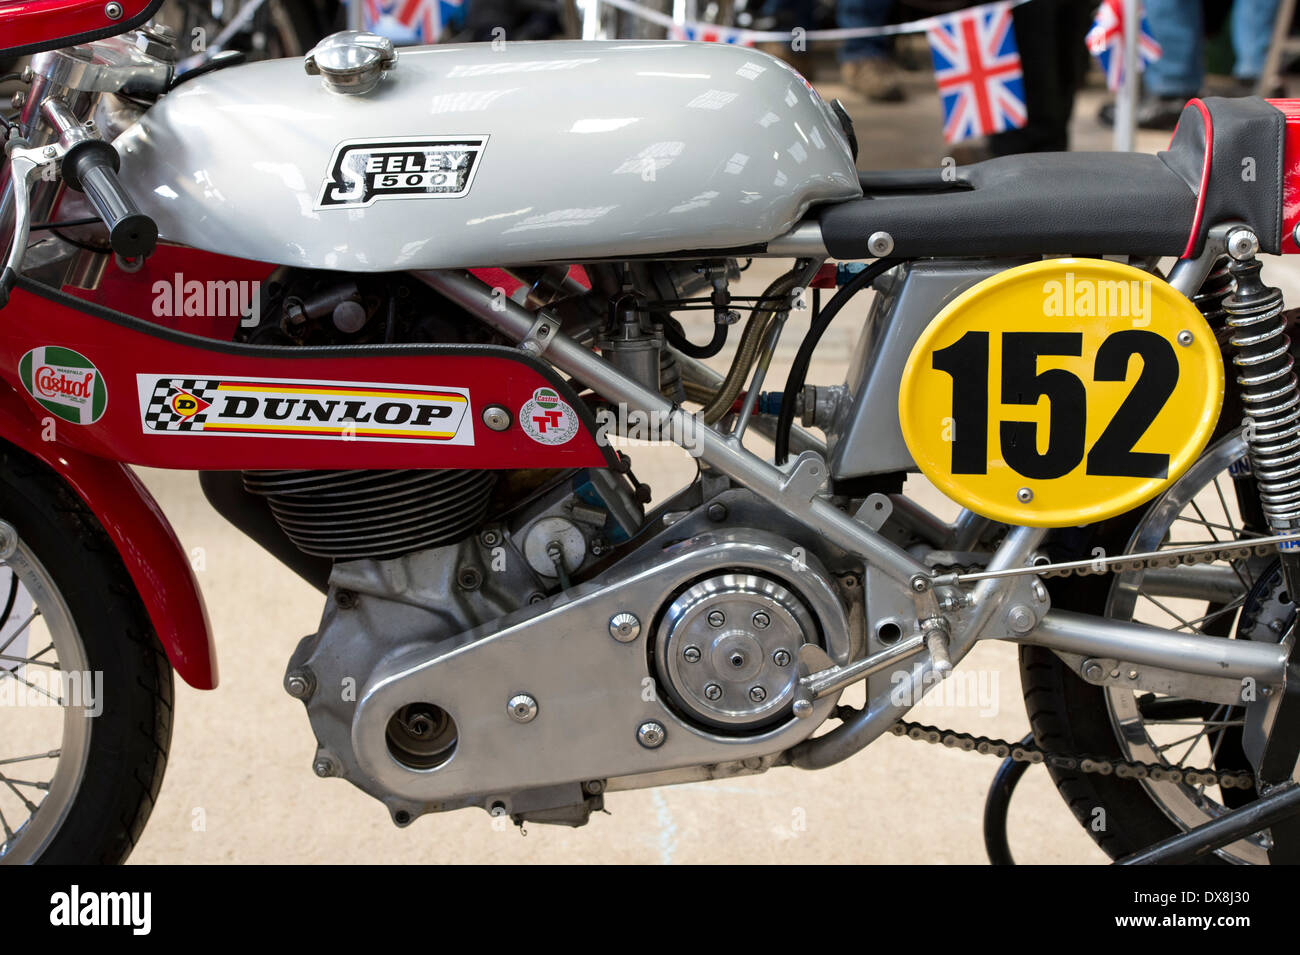 Seeley 500cc Racing Motorcycle Stock Photo